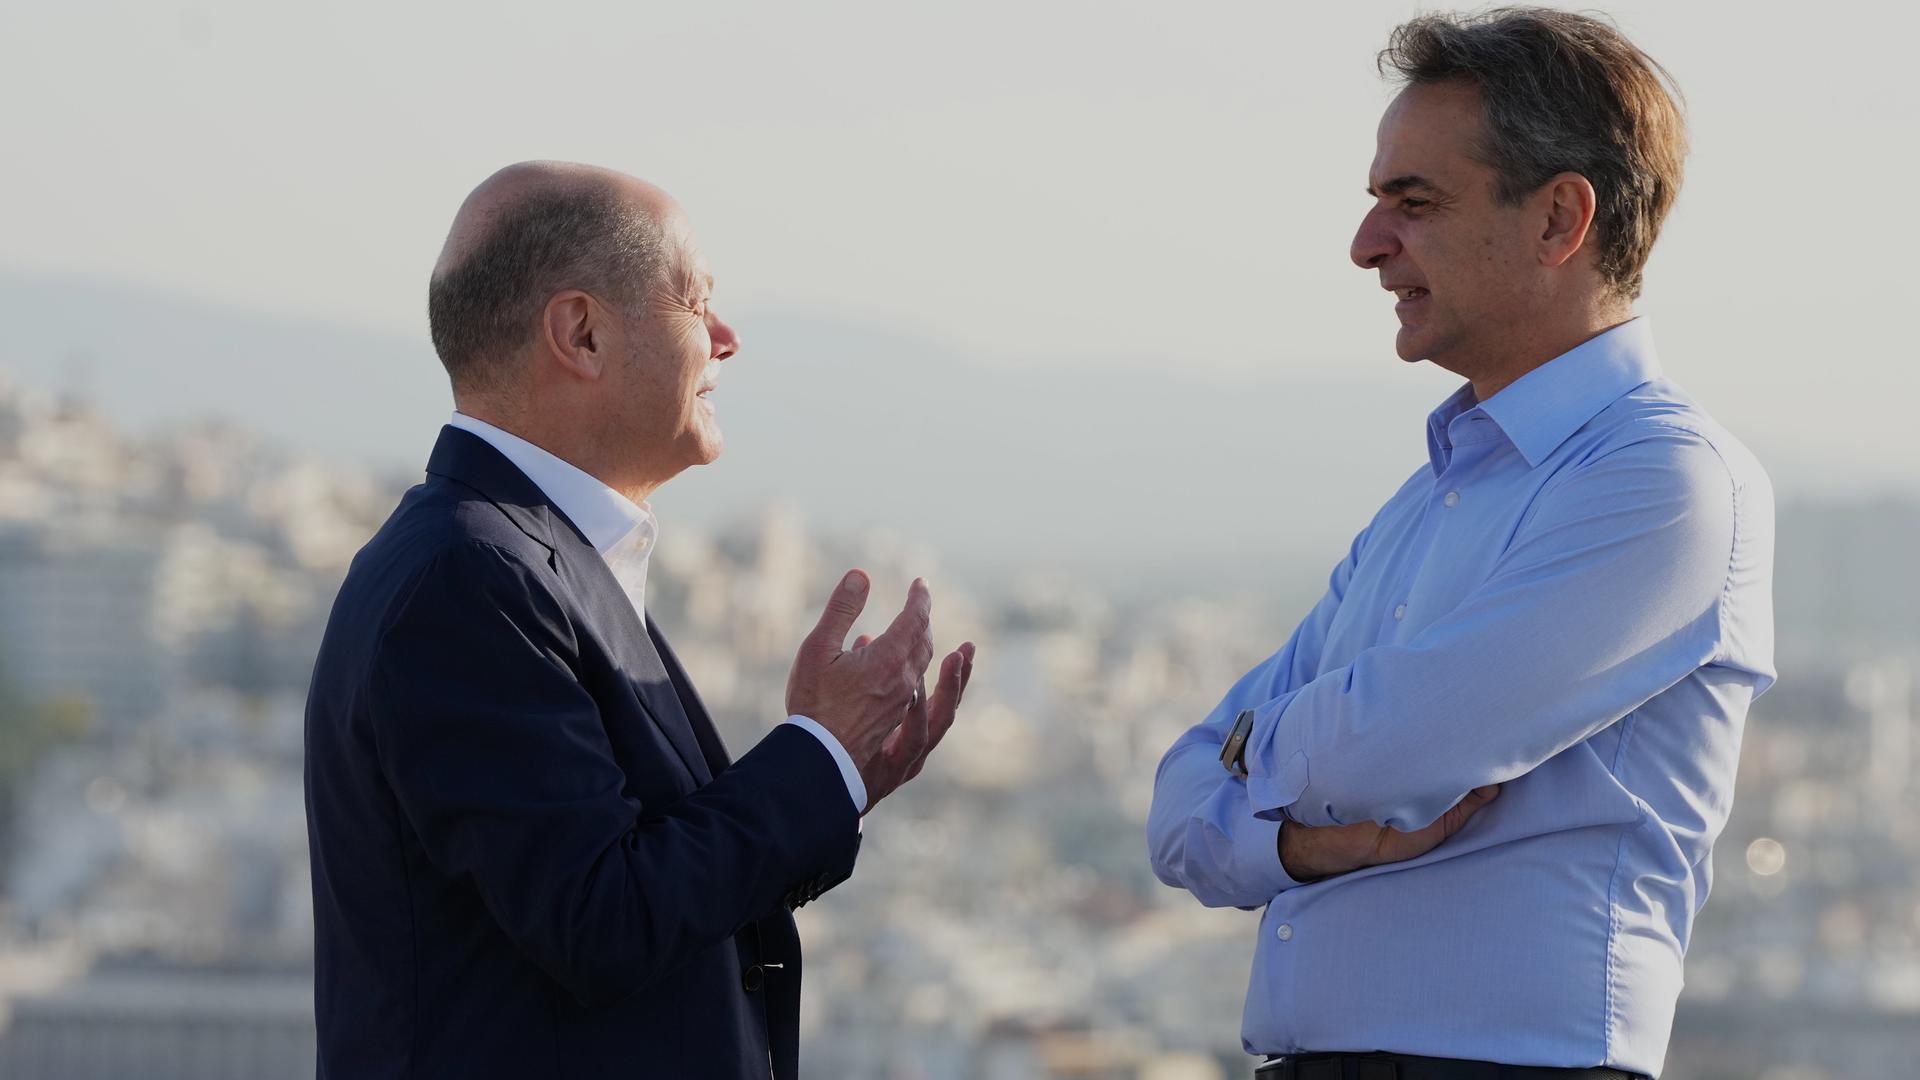 Athen: Bundeskanzler Olaf Scholz und Kyriakos Mitsotakis, Ministerpräsident der Hellenischen Republik, unterhalten sich auf dem Aussichtspunkt der Akropolis.